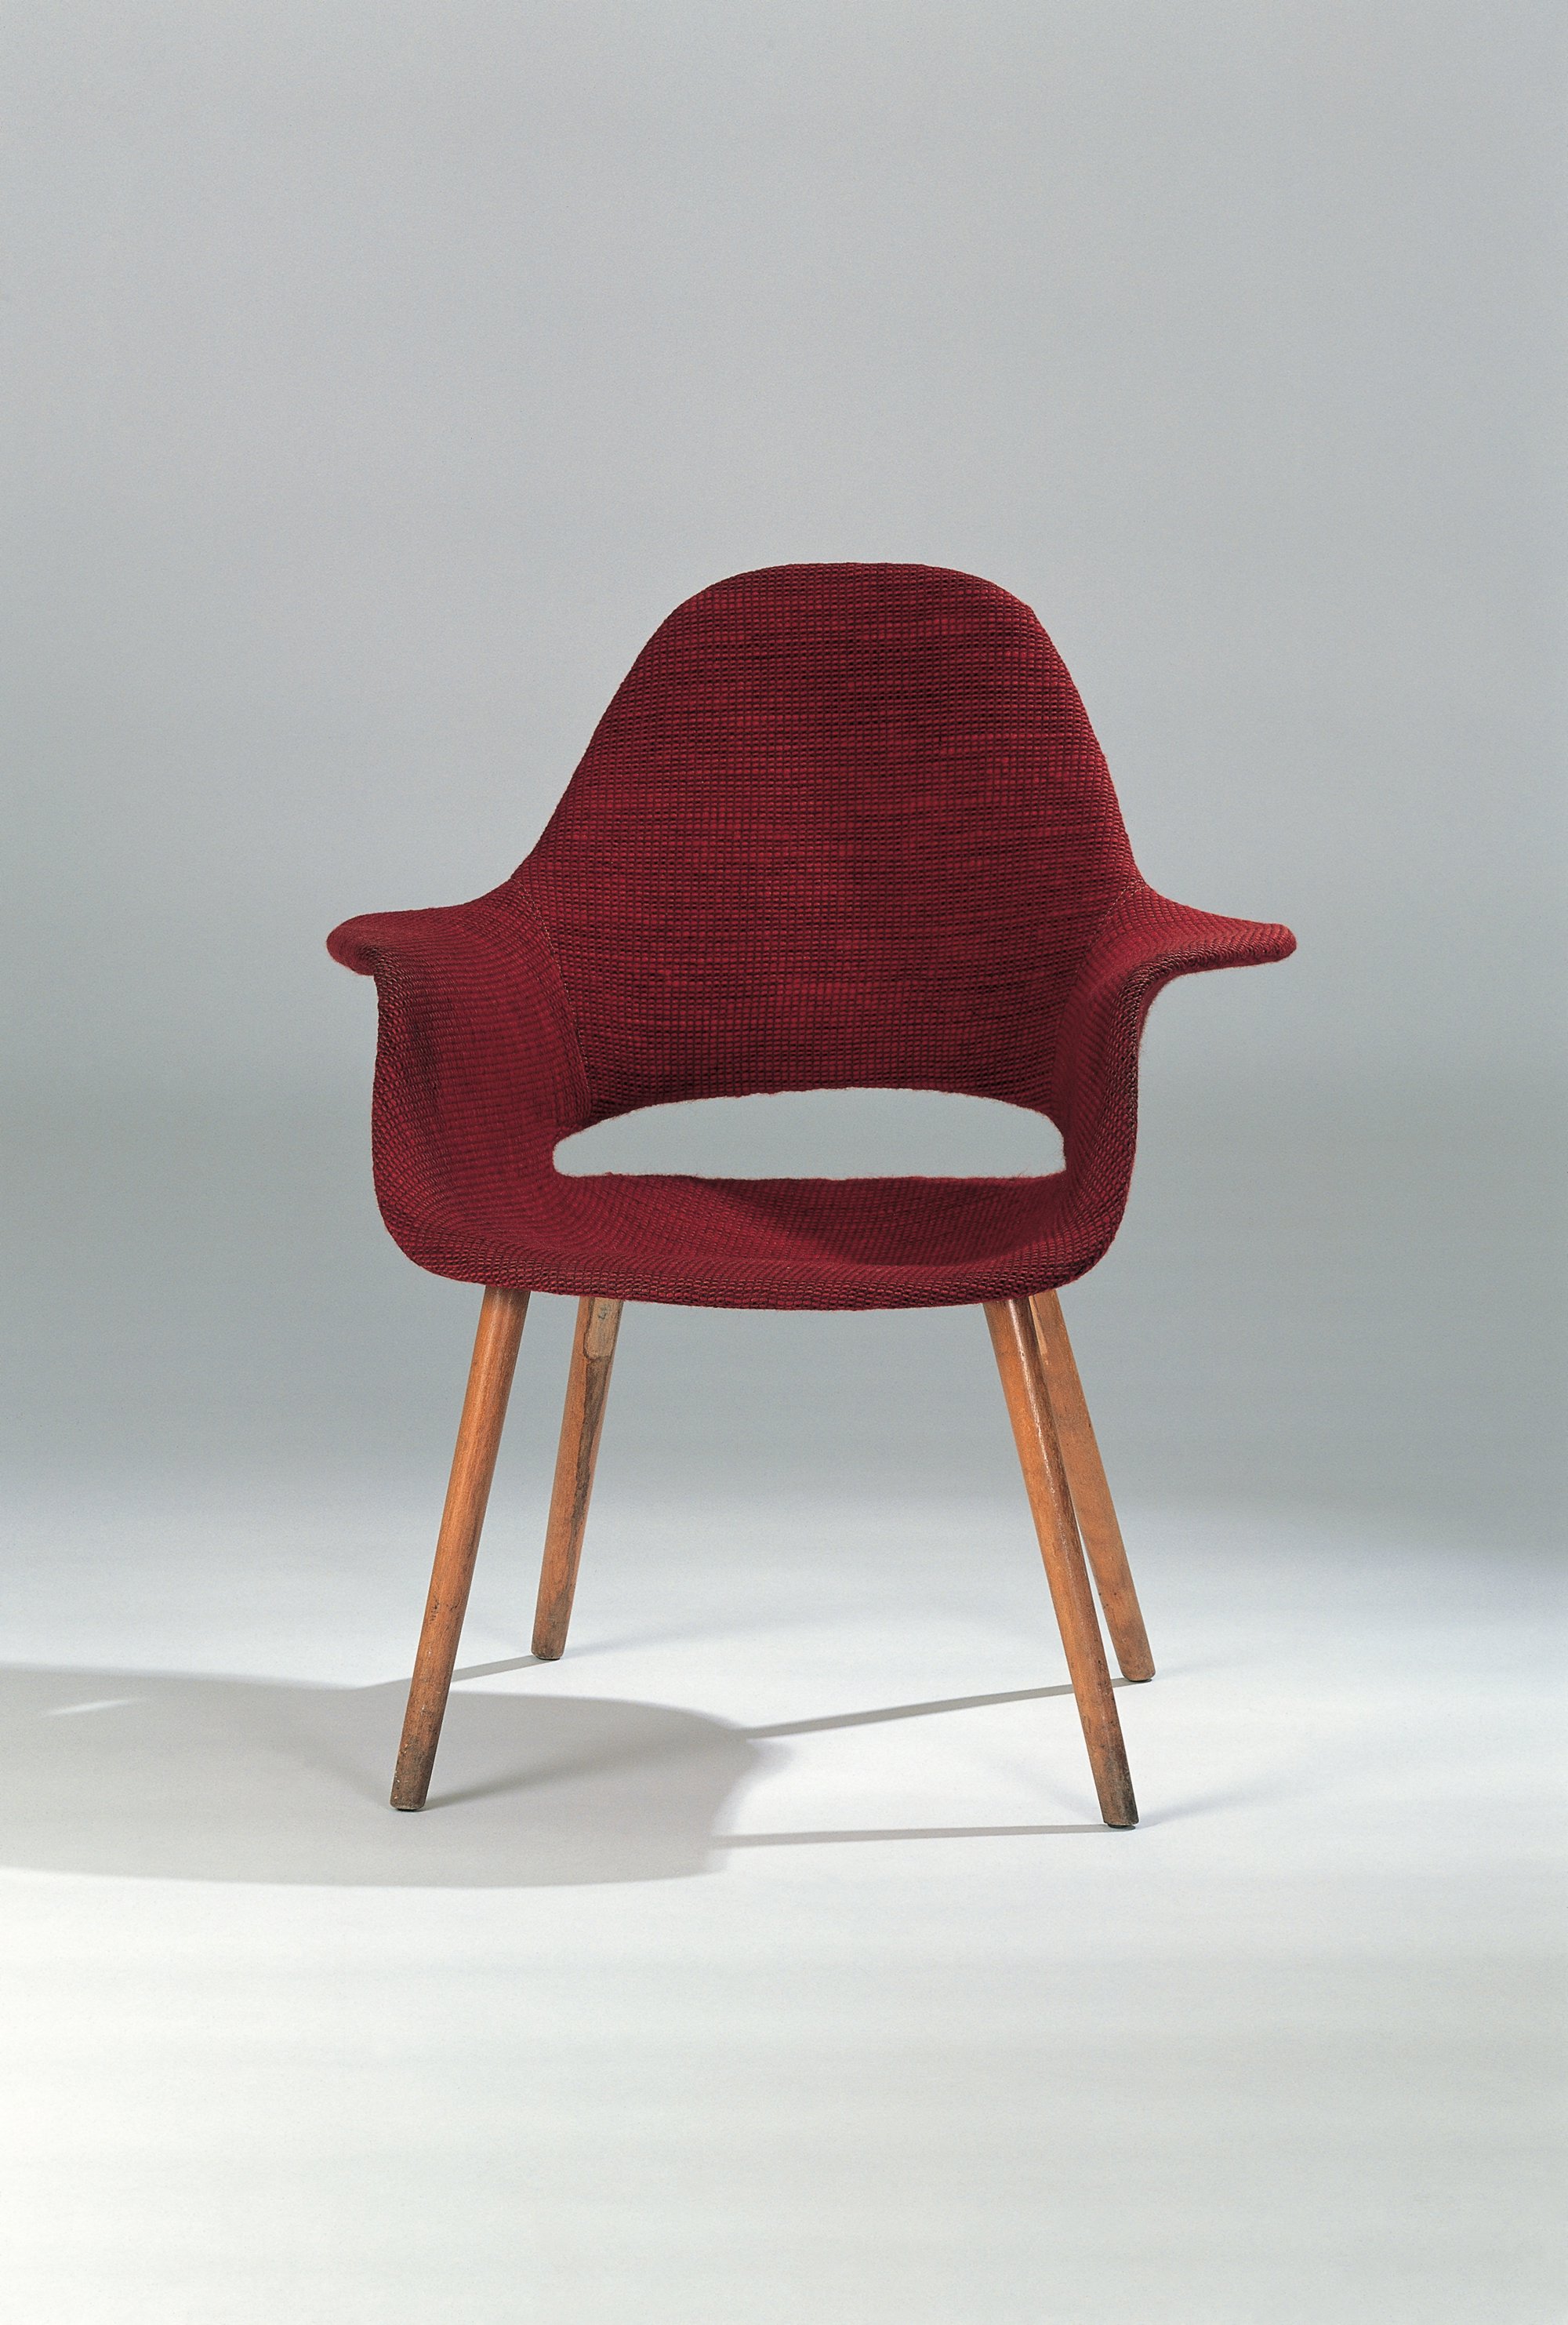 silla roja Charles Eames y Eero Saarinen